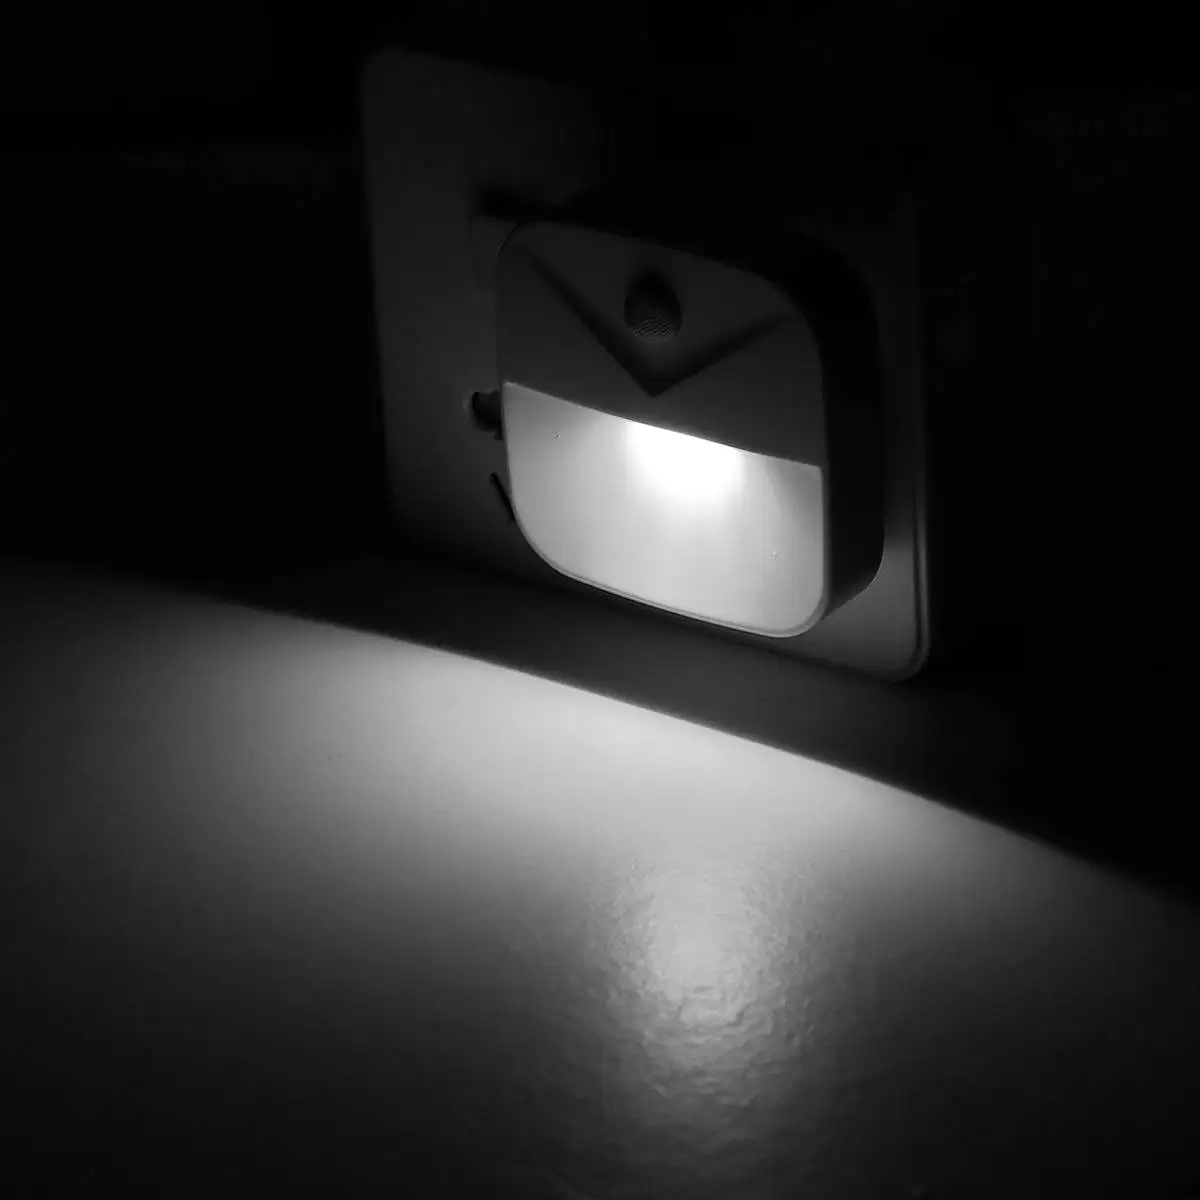 1/2/4 шт мини Ночной светильник свет Сенсор Авто Управление США Plug Новинка квадратный детская спальня лампа Луна Романтический свет лампы - Испускаемый цвет: Белый